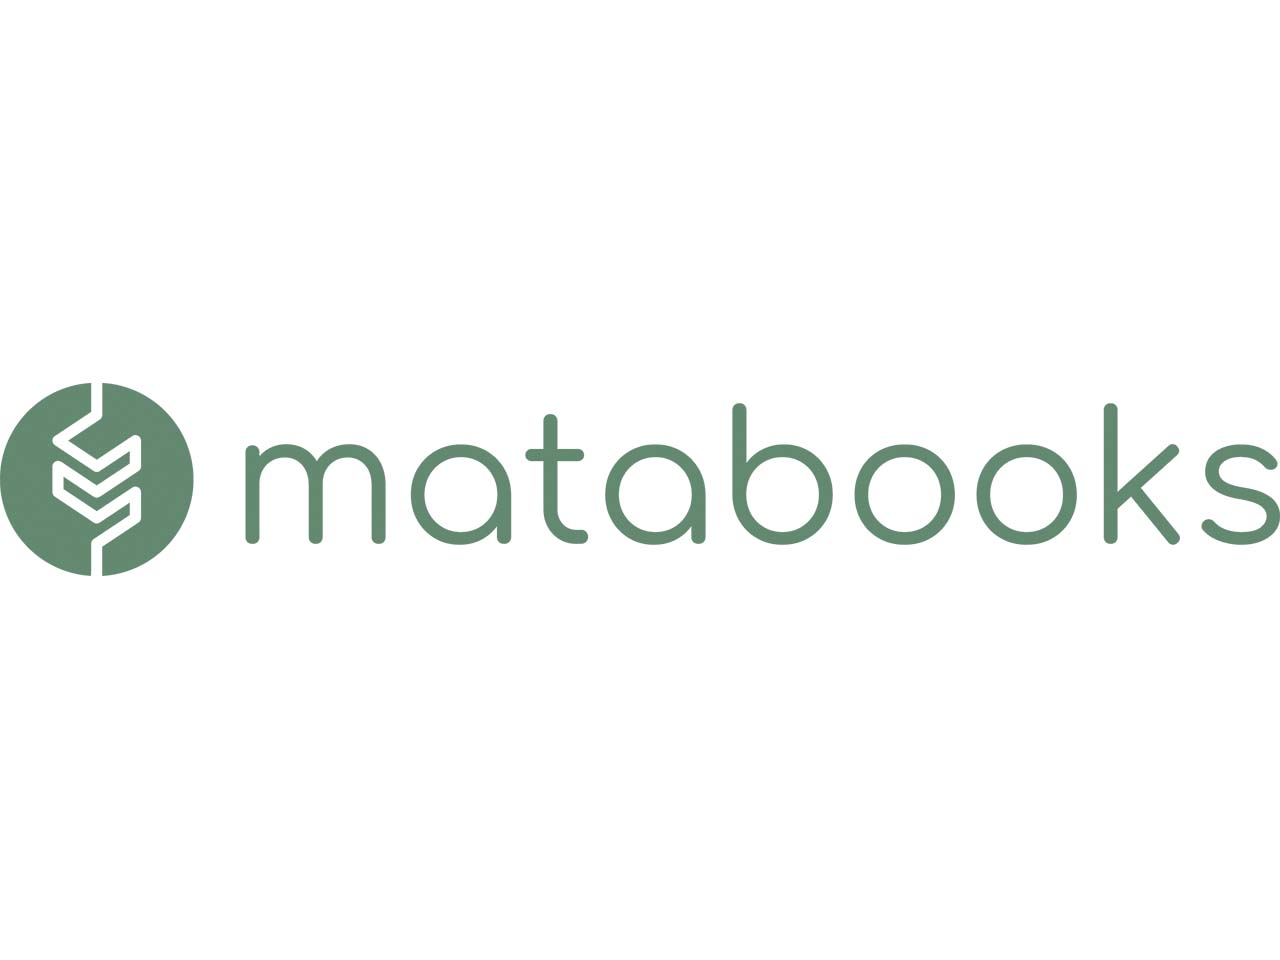 Matabooks